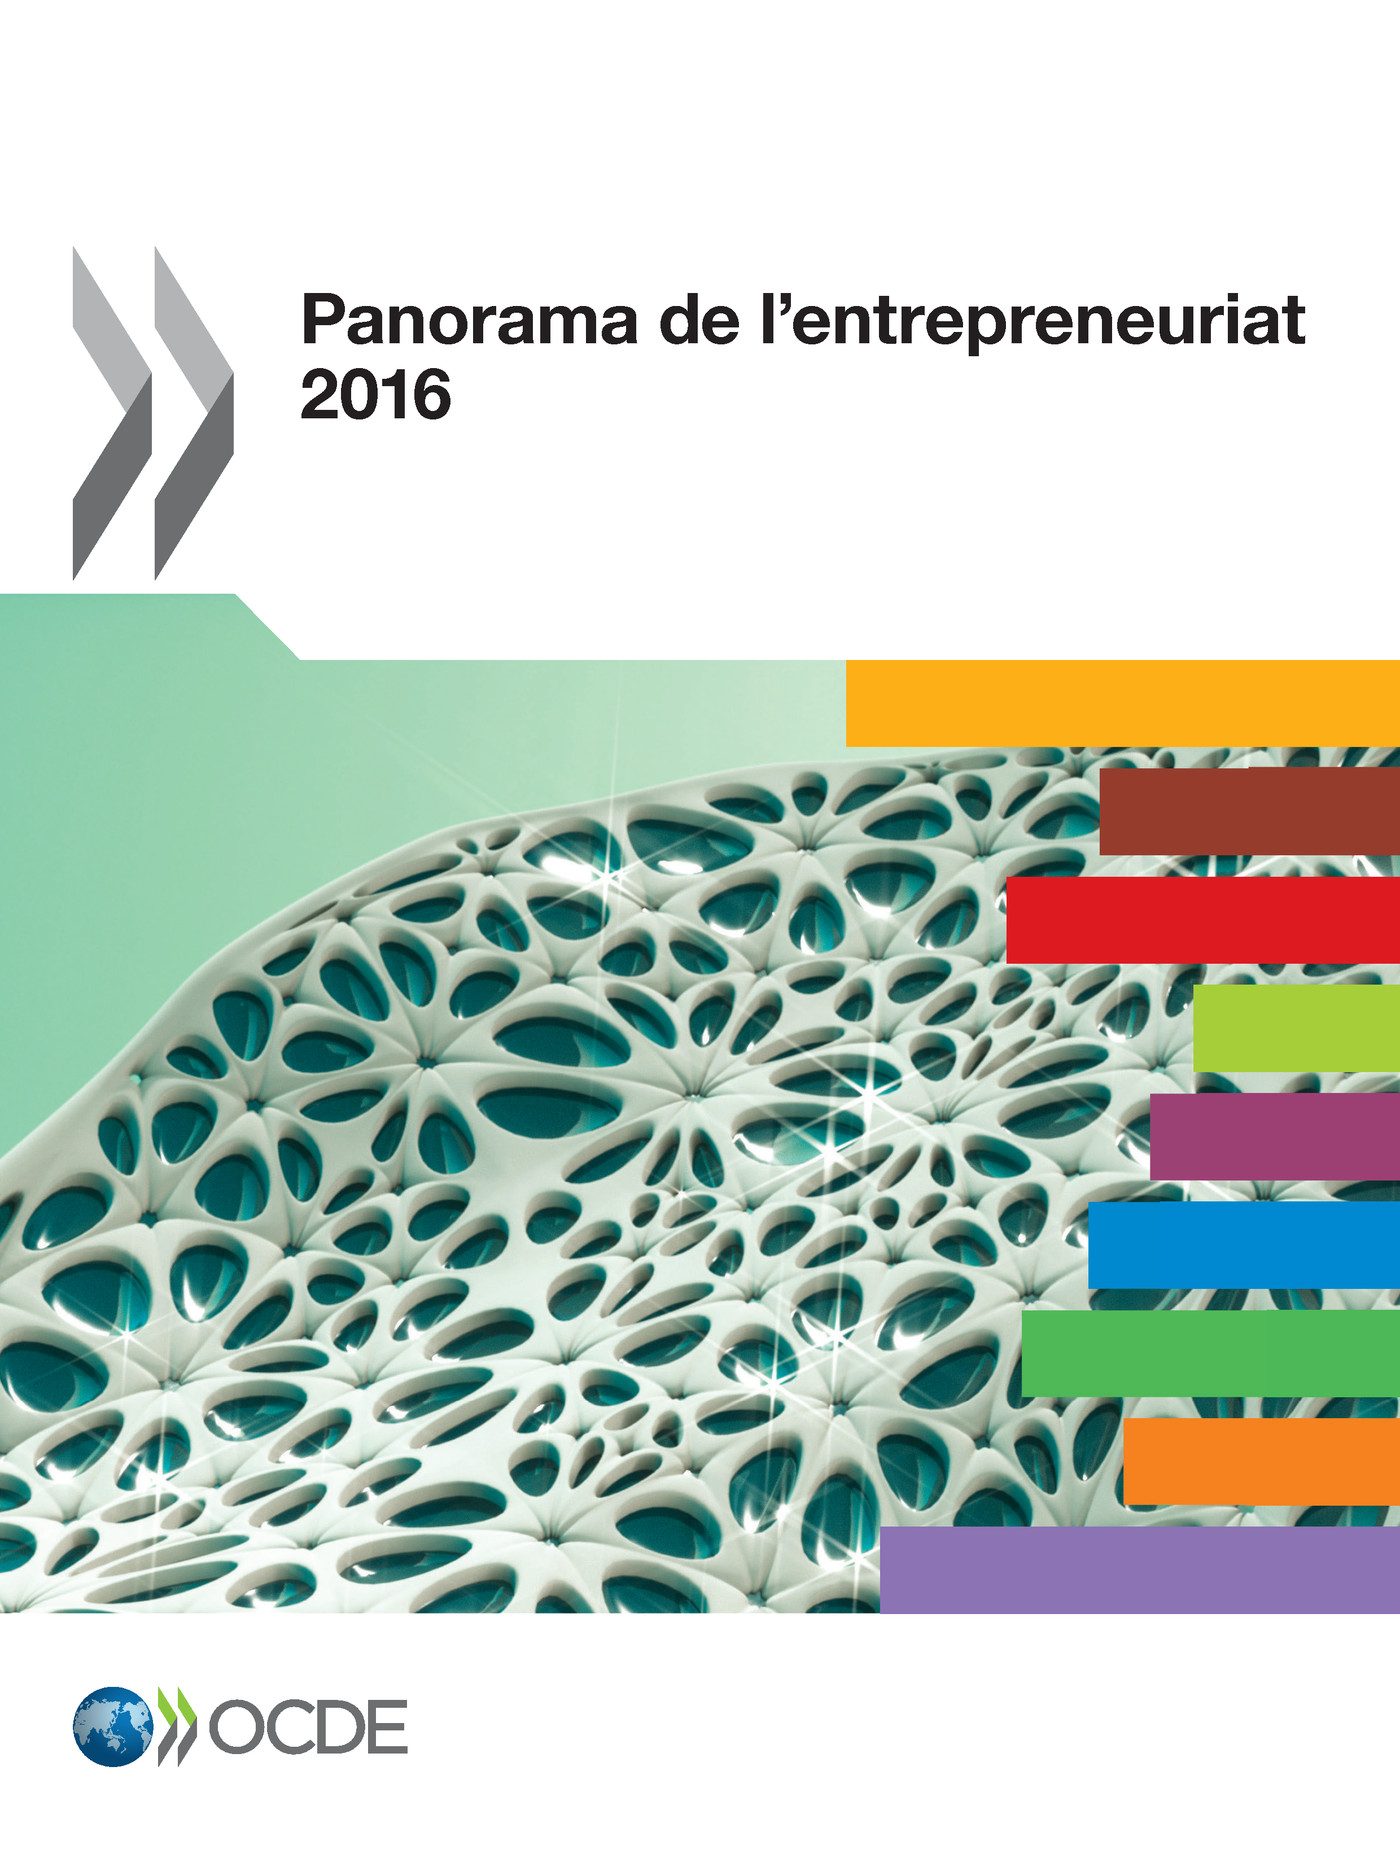 Panorama de l'entrepreneuriat 2016 -  Collectif - OCDE / OECD